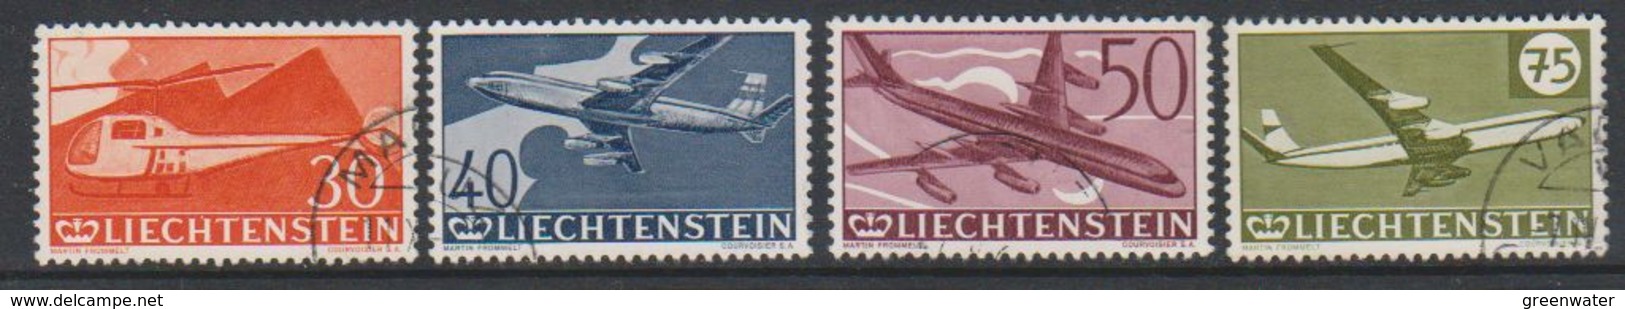 Liechtenstein 1960 Airmail Stamps 4v Used  (39139D) - Luchtpostzegels